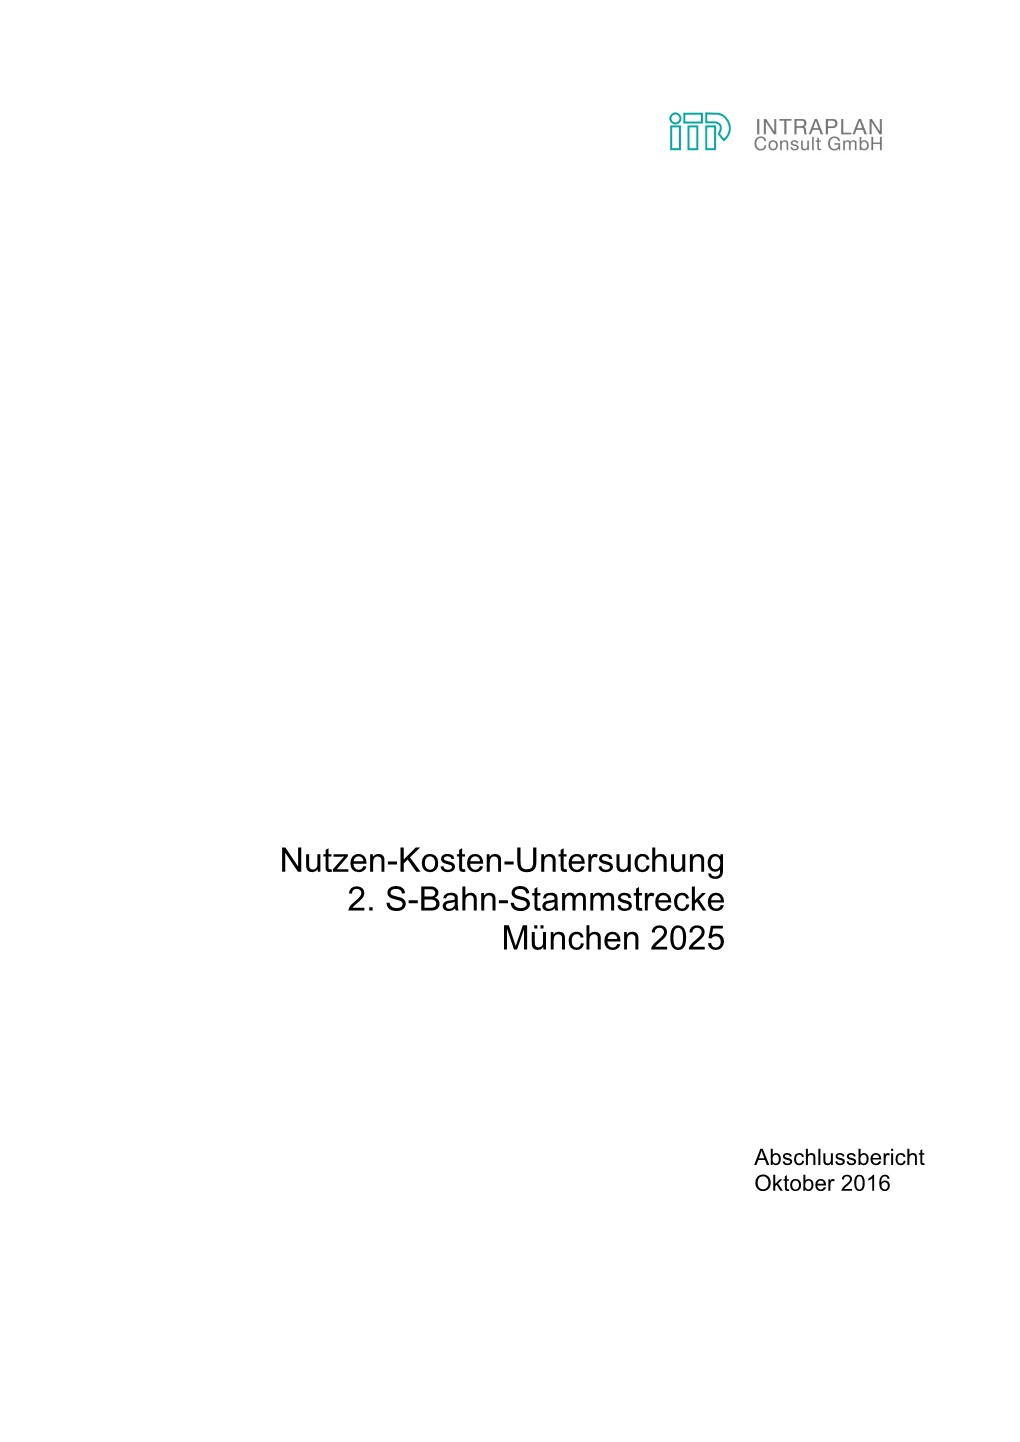 Nutzen-Kosten-Untersuchung 2. S-Bahn-Stammstrecke München 2025